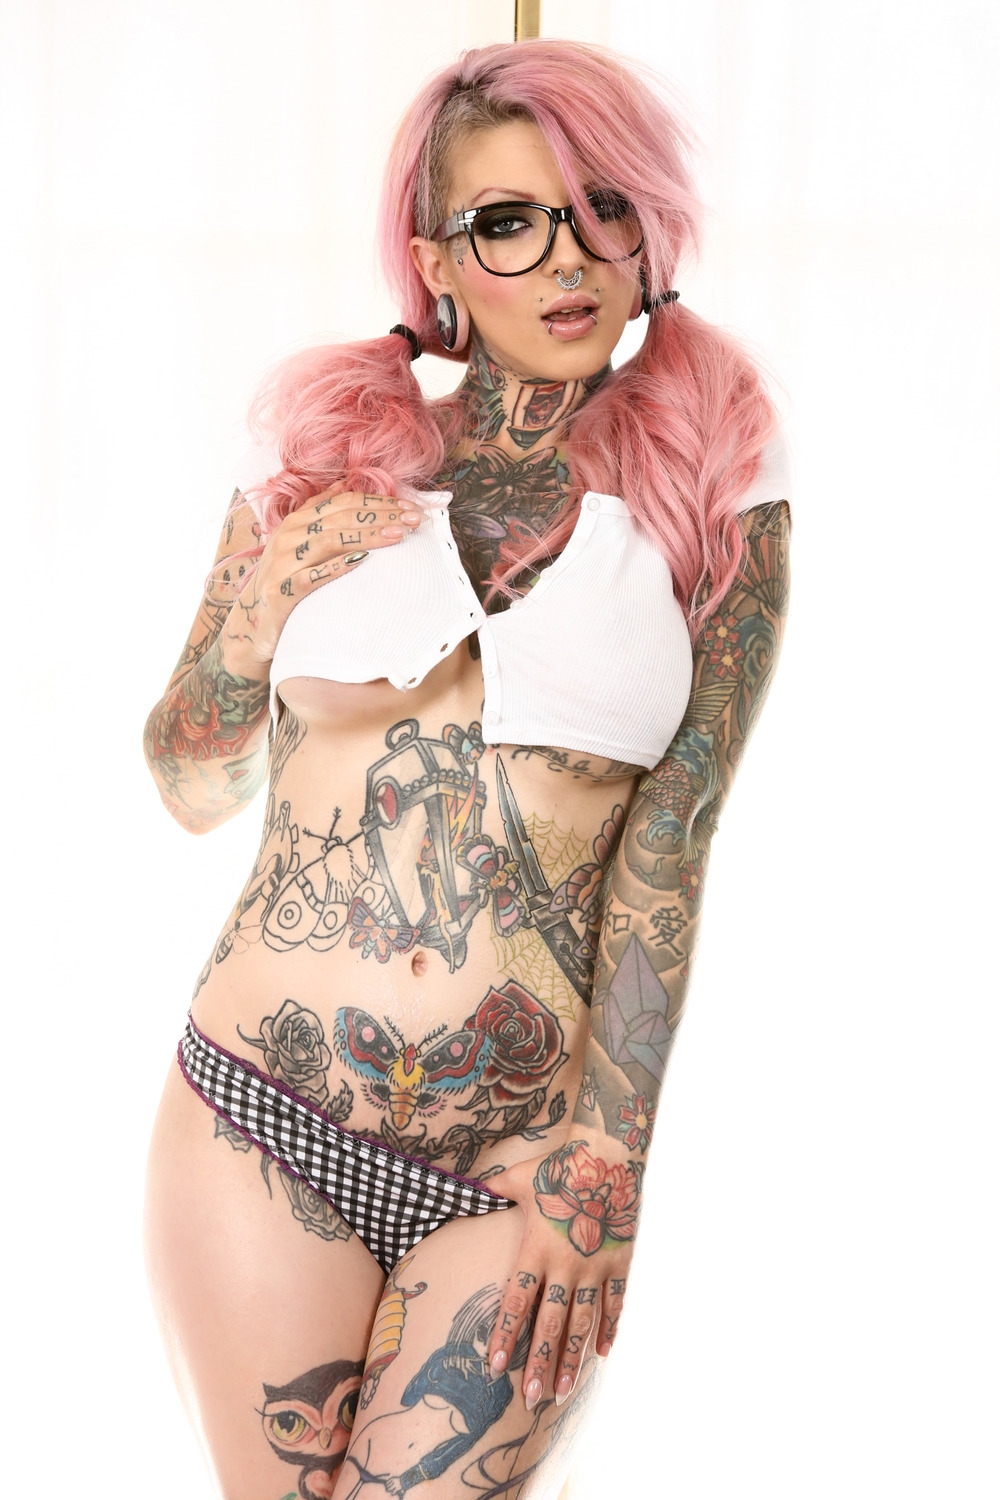 Татуированная эмо красотка с розовыми волосами и пирсингом смазливого лица Sydnee Vicious в очках позирует голышом жаркой попкой раком на полу